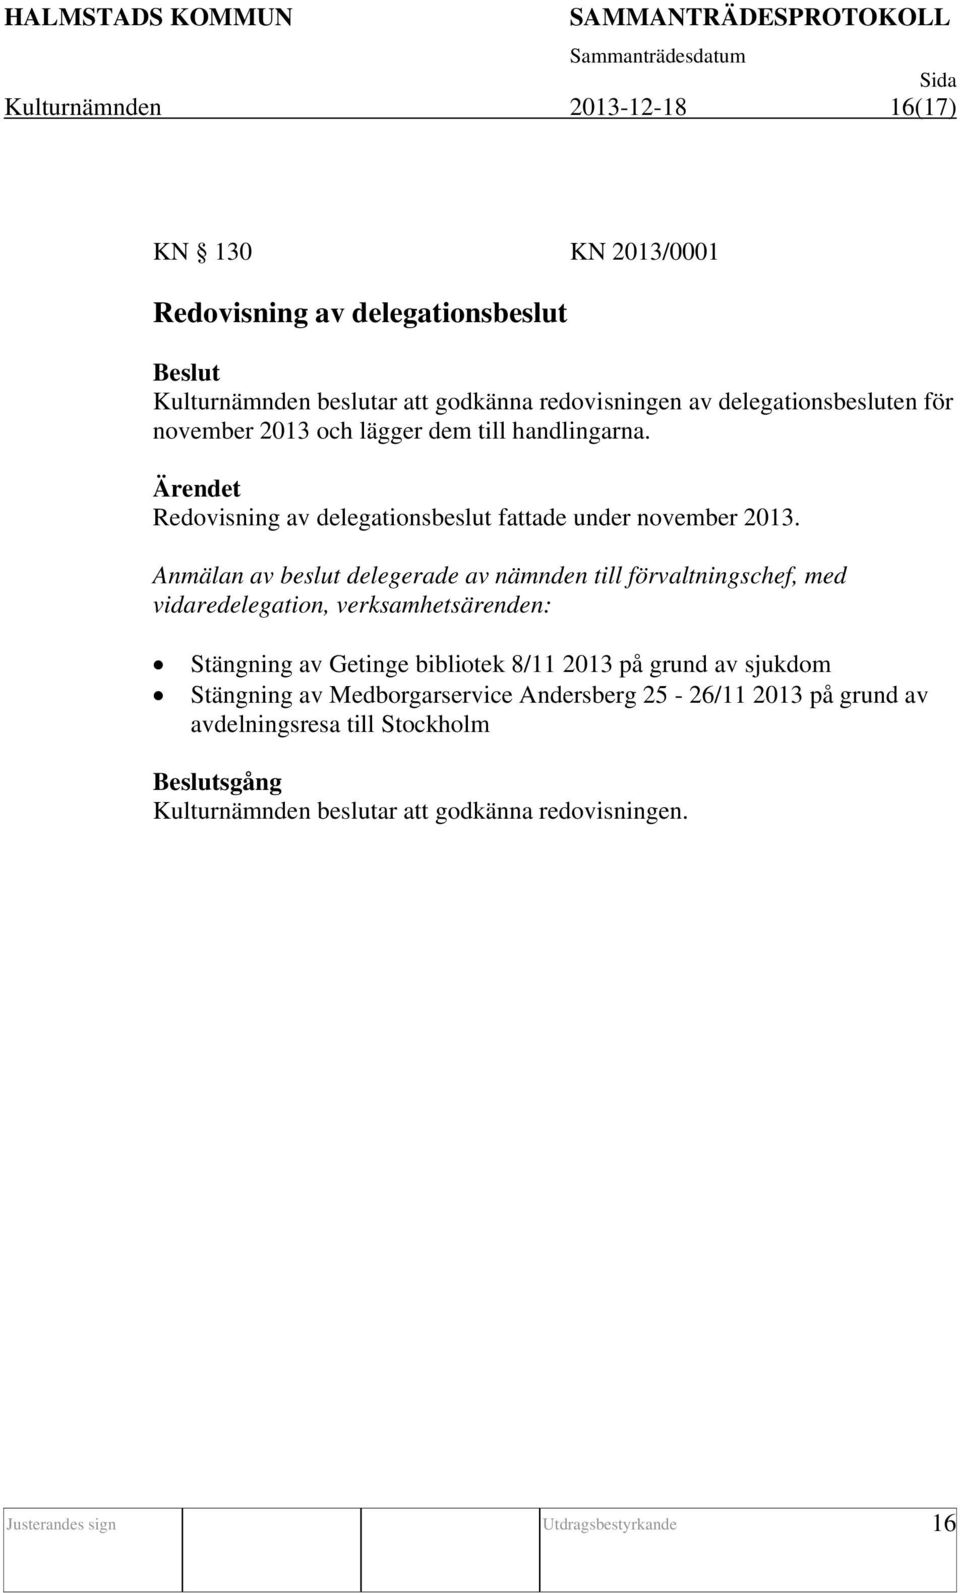 Anmälan av beslut delegerade av nämnden till förvaltningschef, med vidaredelegation, verksamhetsärenden: Stängning av Getinge bibliotek 8/11 2013 på grund av